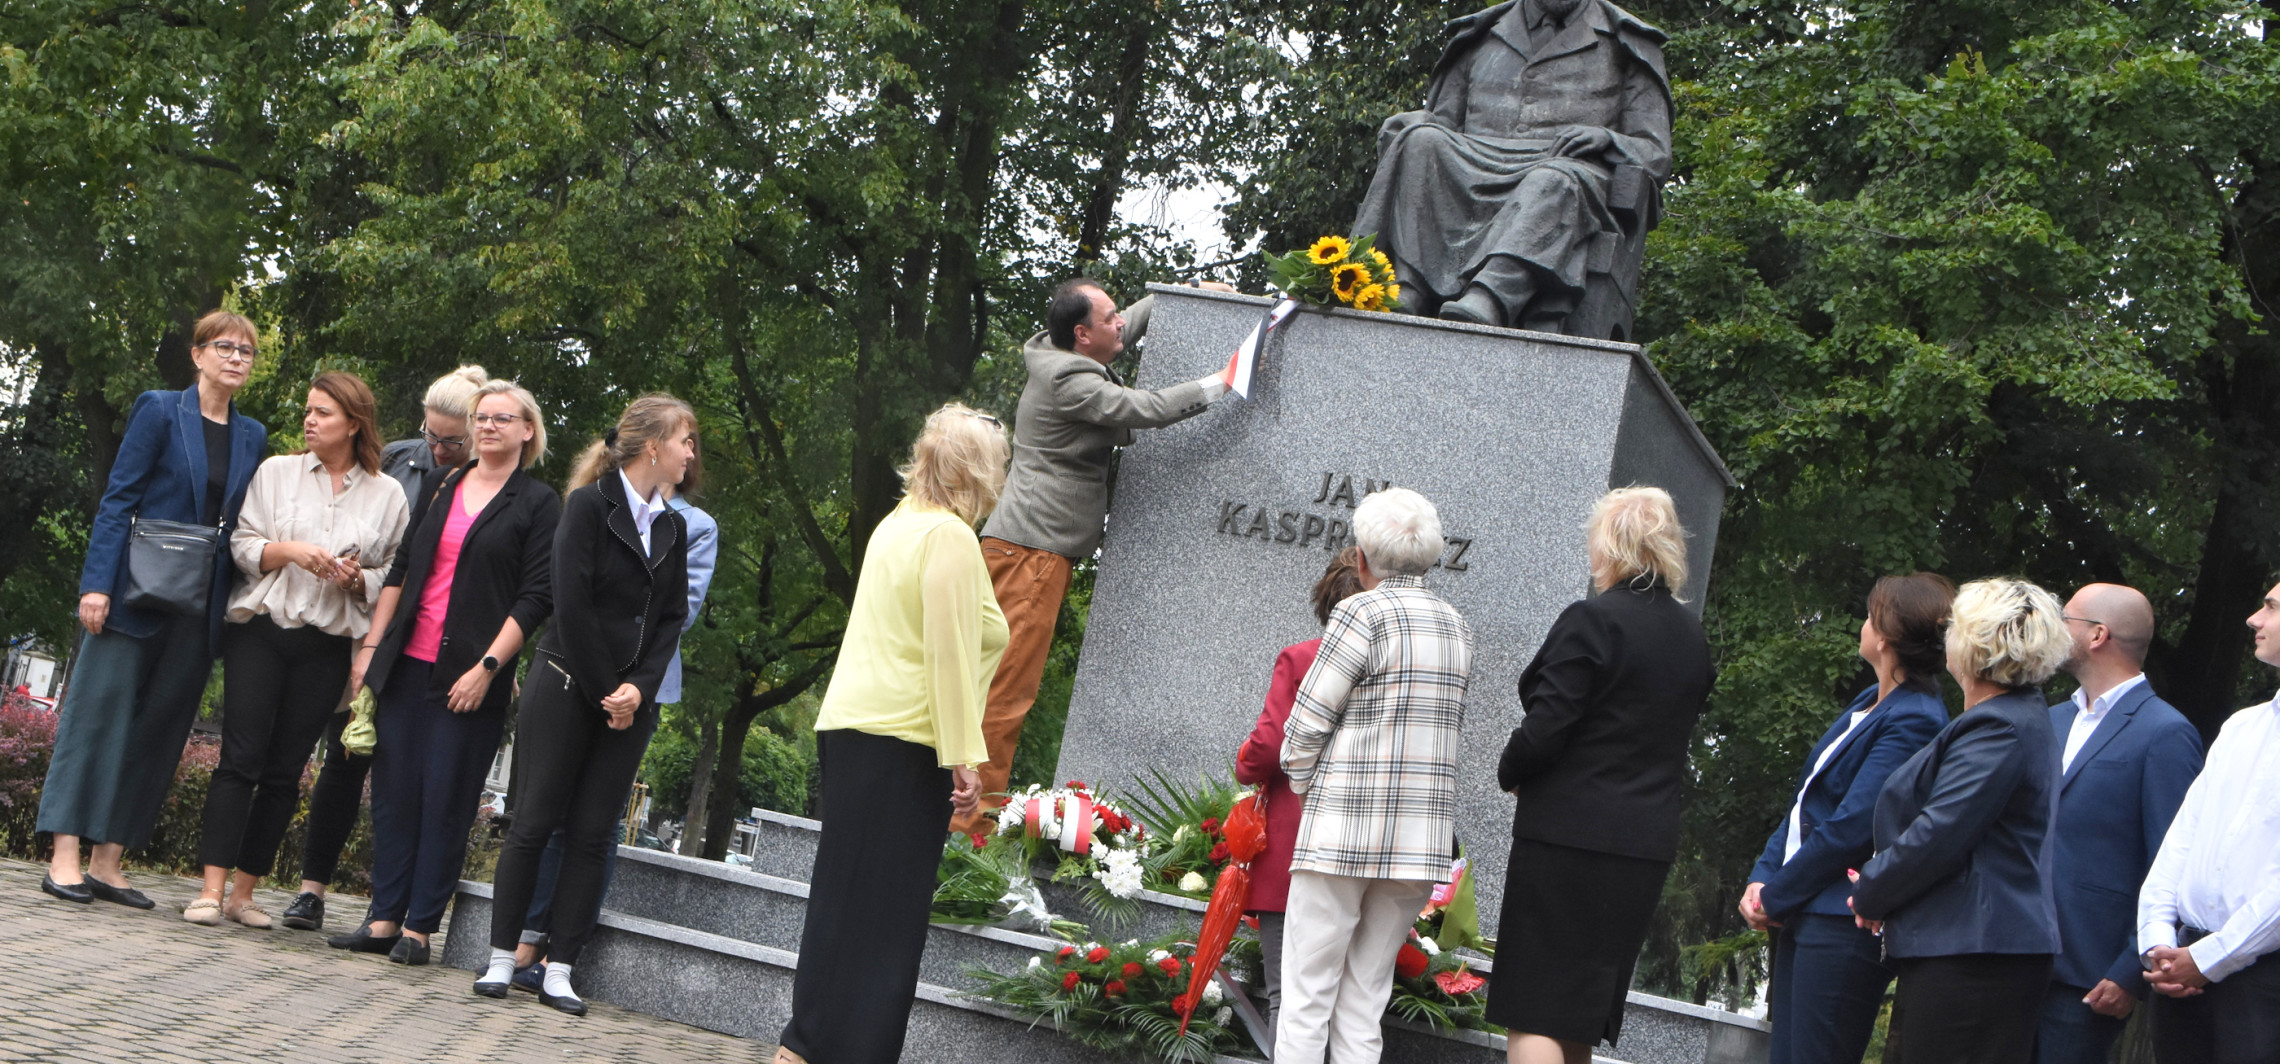 Inowrocław - Uczczono 97. rocznicę śmierci kujawskiego wieszcza